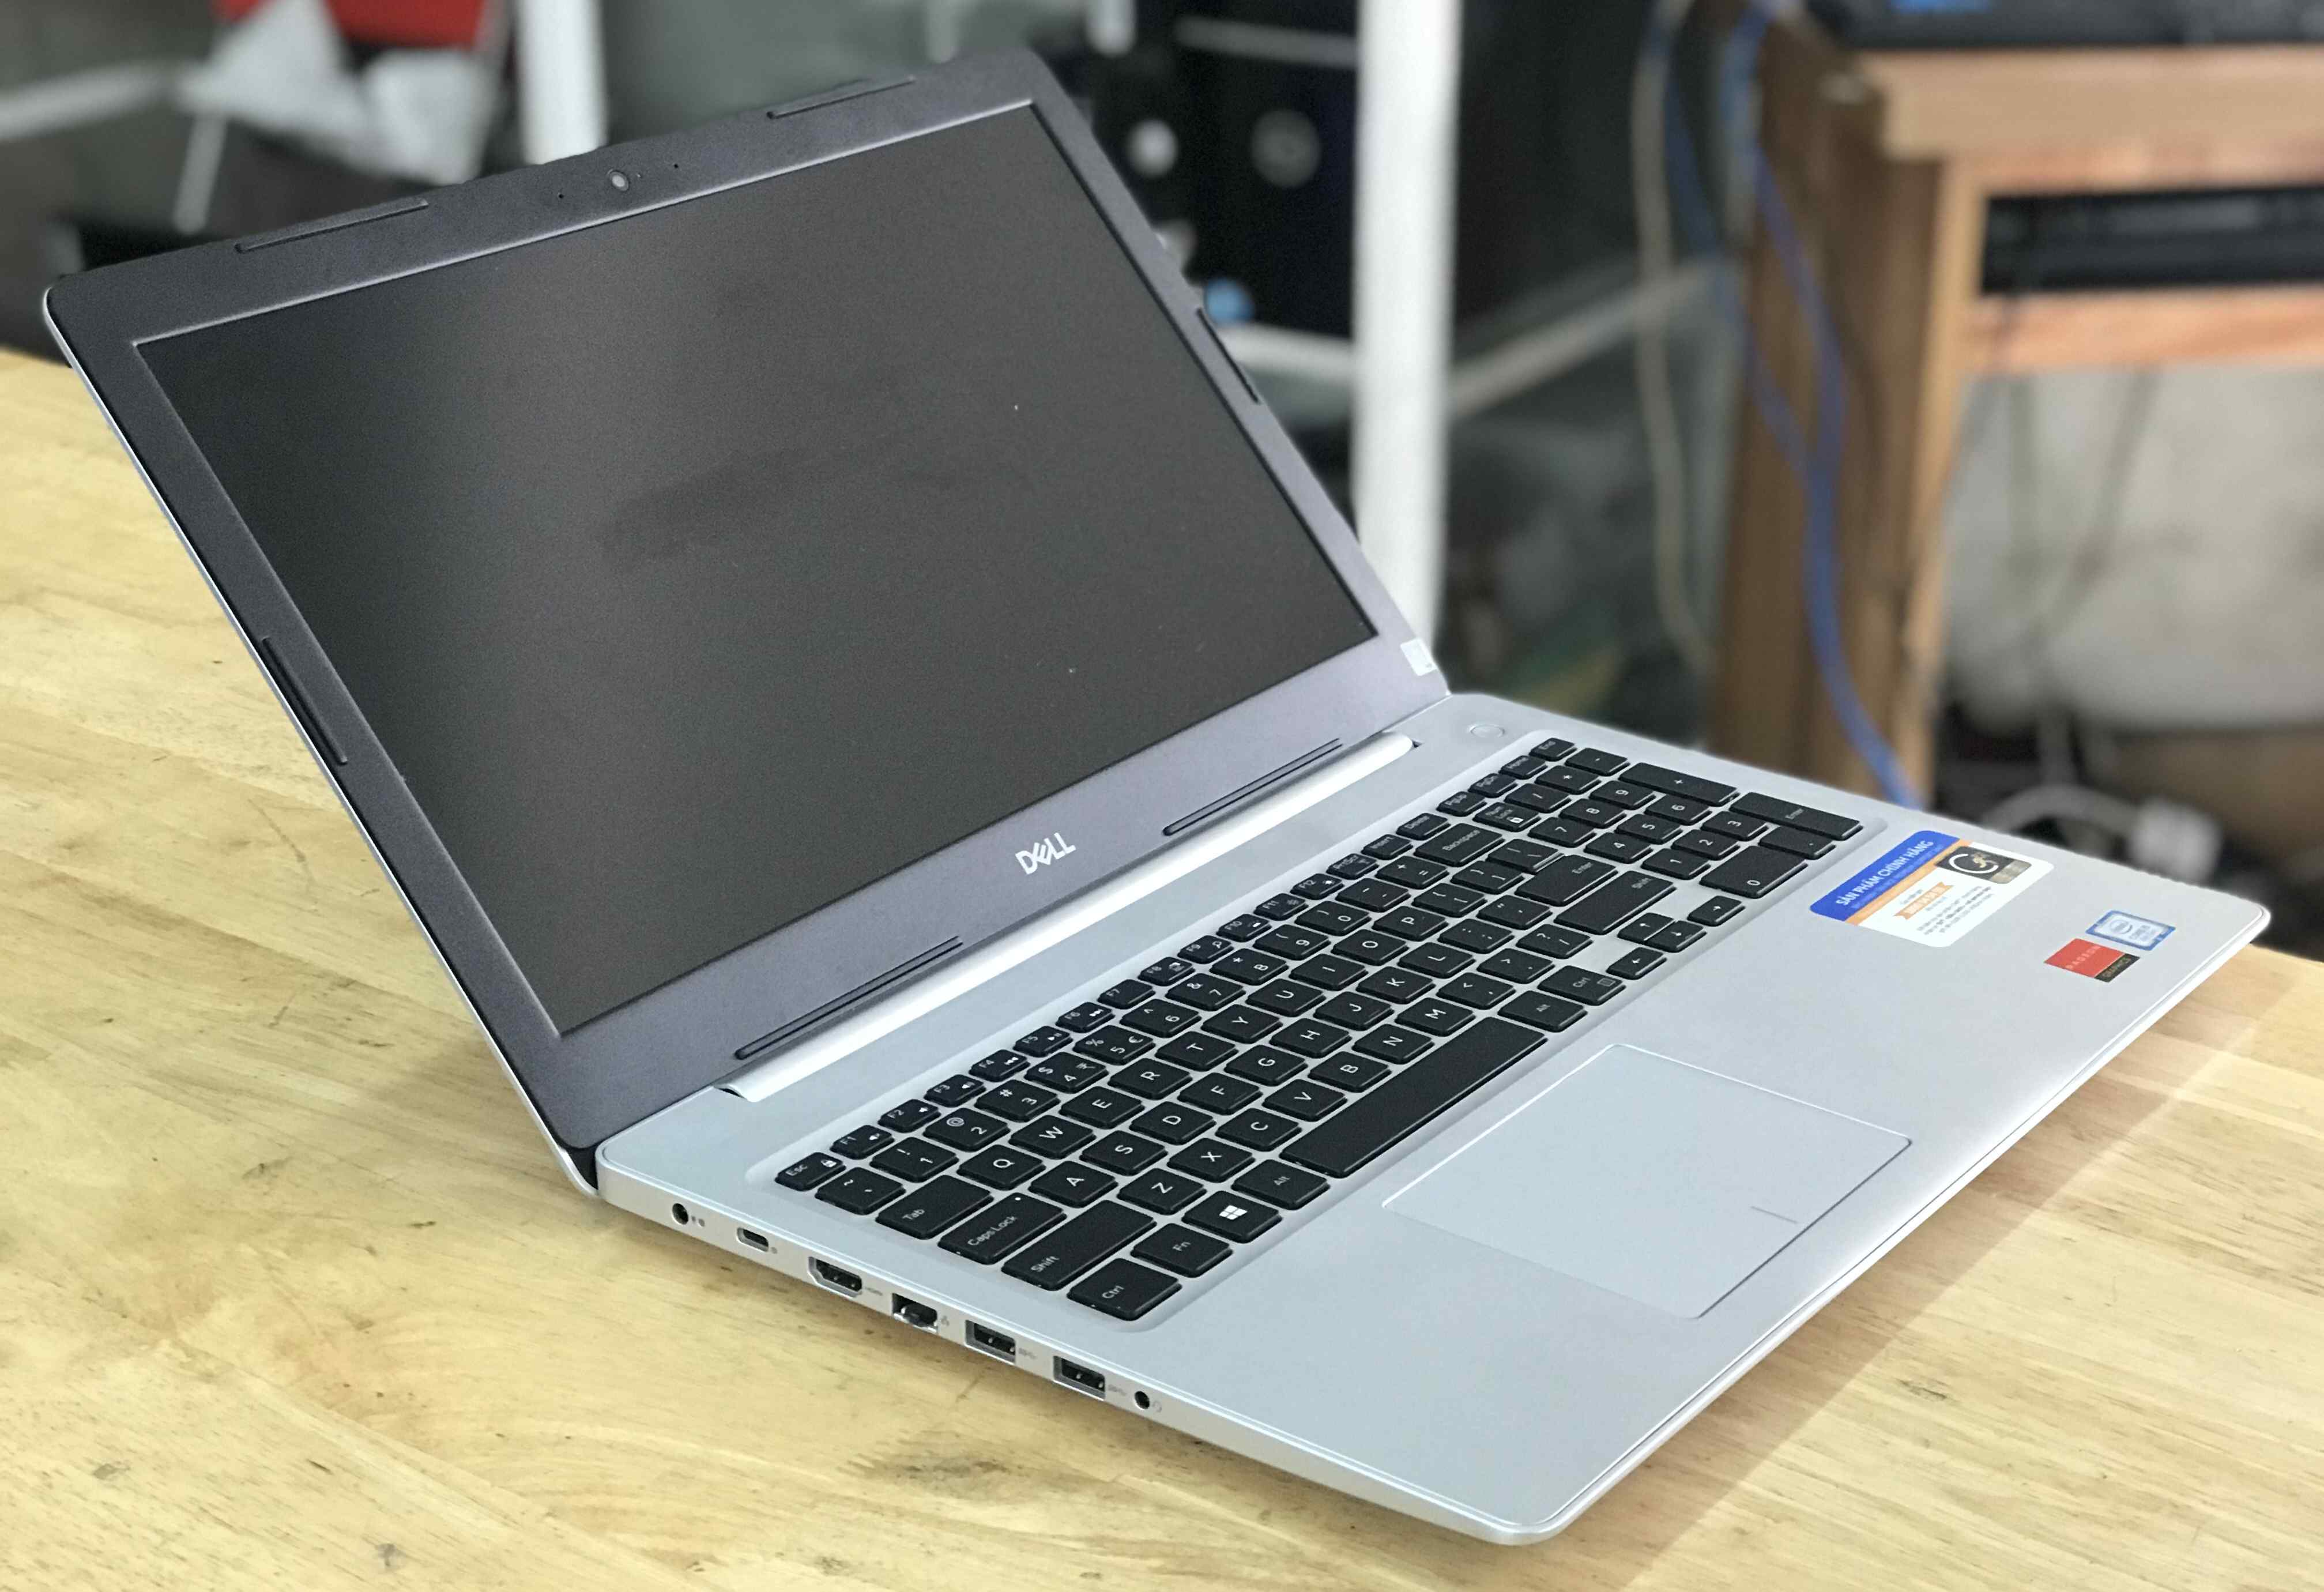 bán laptop dell inspiron 5570 i5 chính hãng tại hà nội